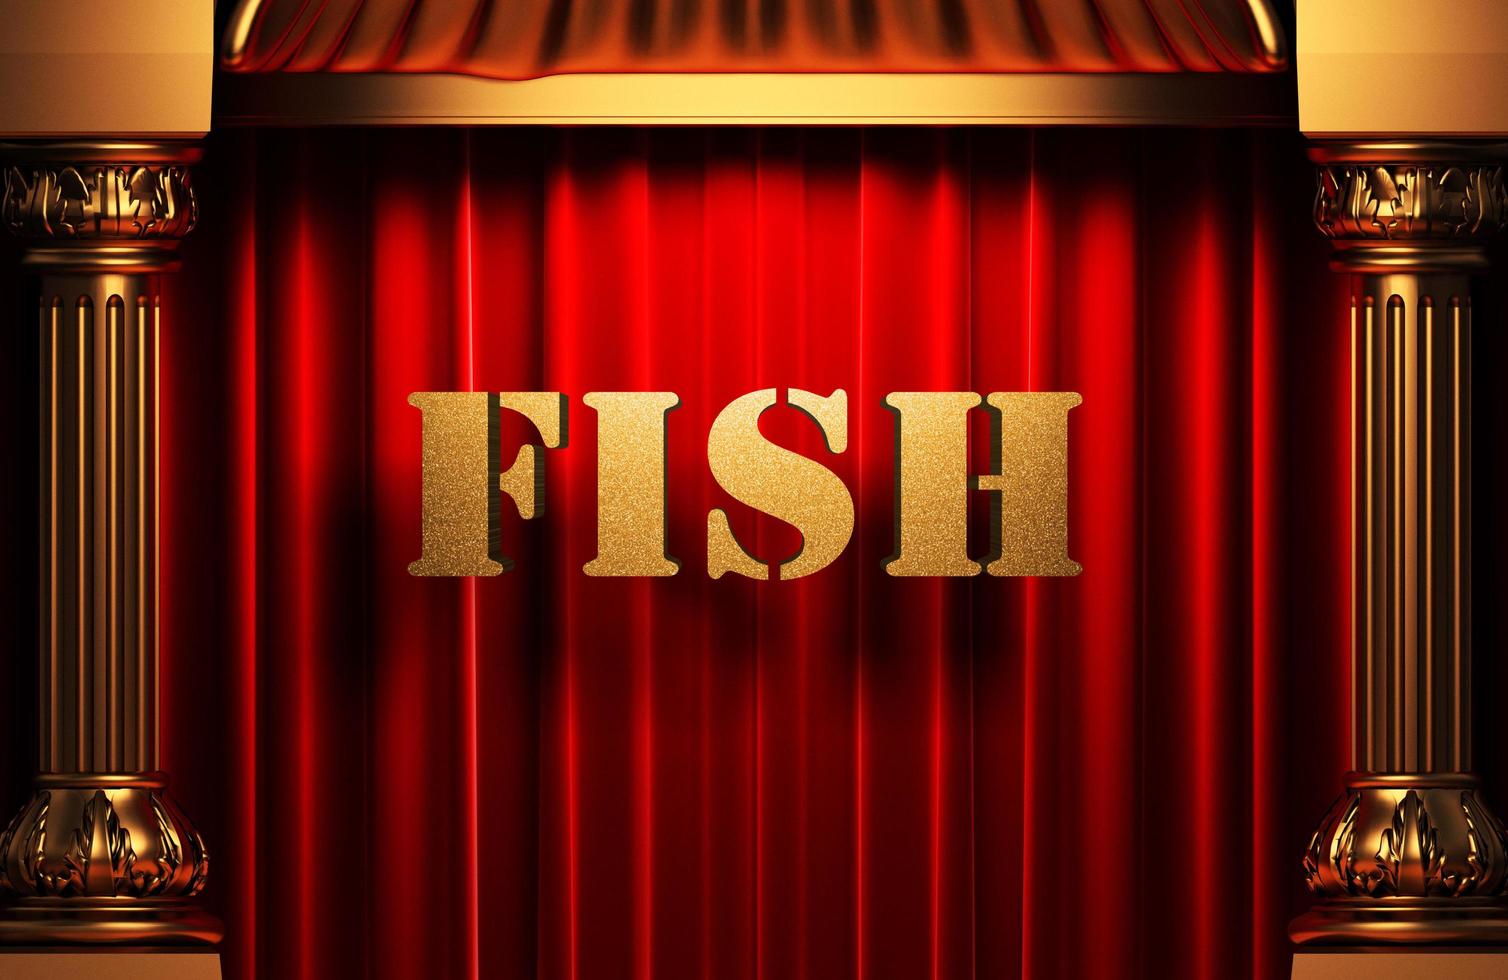 poisson mot d'or sur le rideau rouge photo